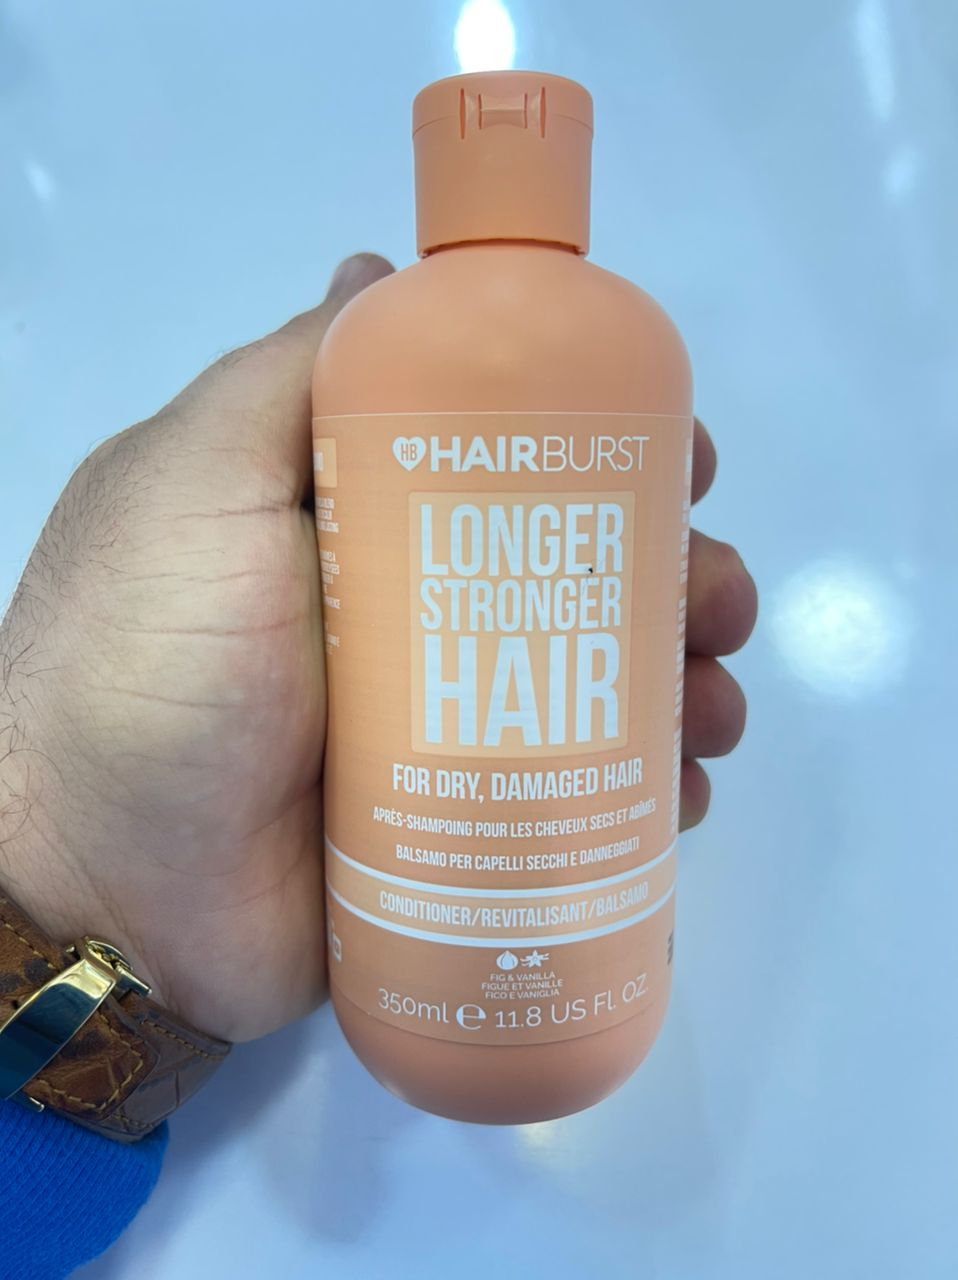 نرم کننده هیربرست Hairburst نارنجی مخصوص موهای خشک و آسیب دیده با رنگ و حرارت حجم 350ml | رشد مو، ضد ریزش، بدون سولفات، ترمیم قوی